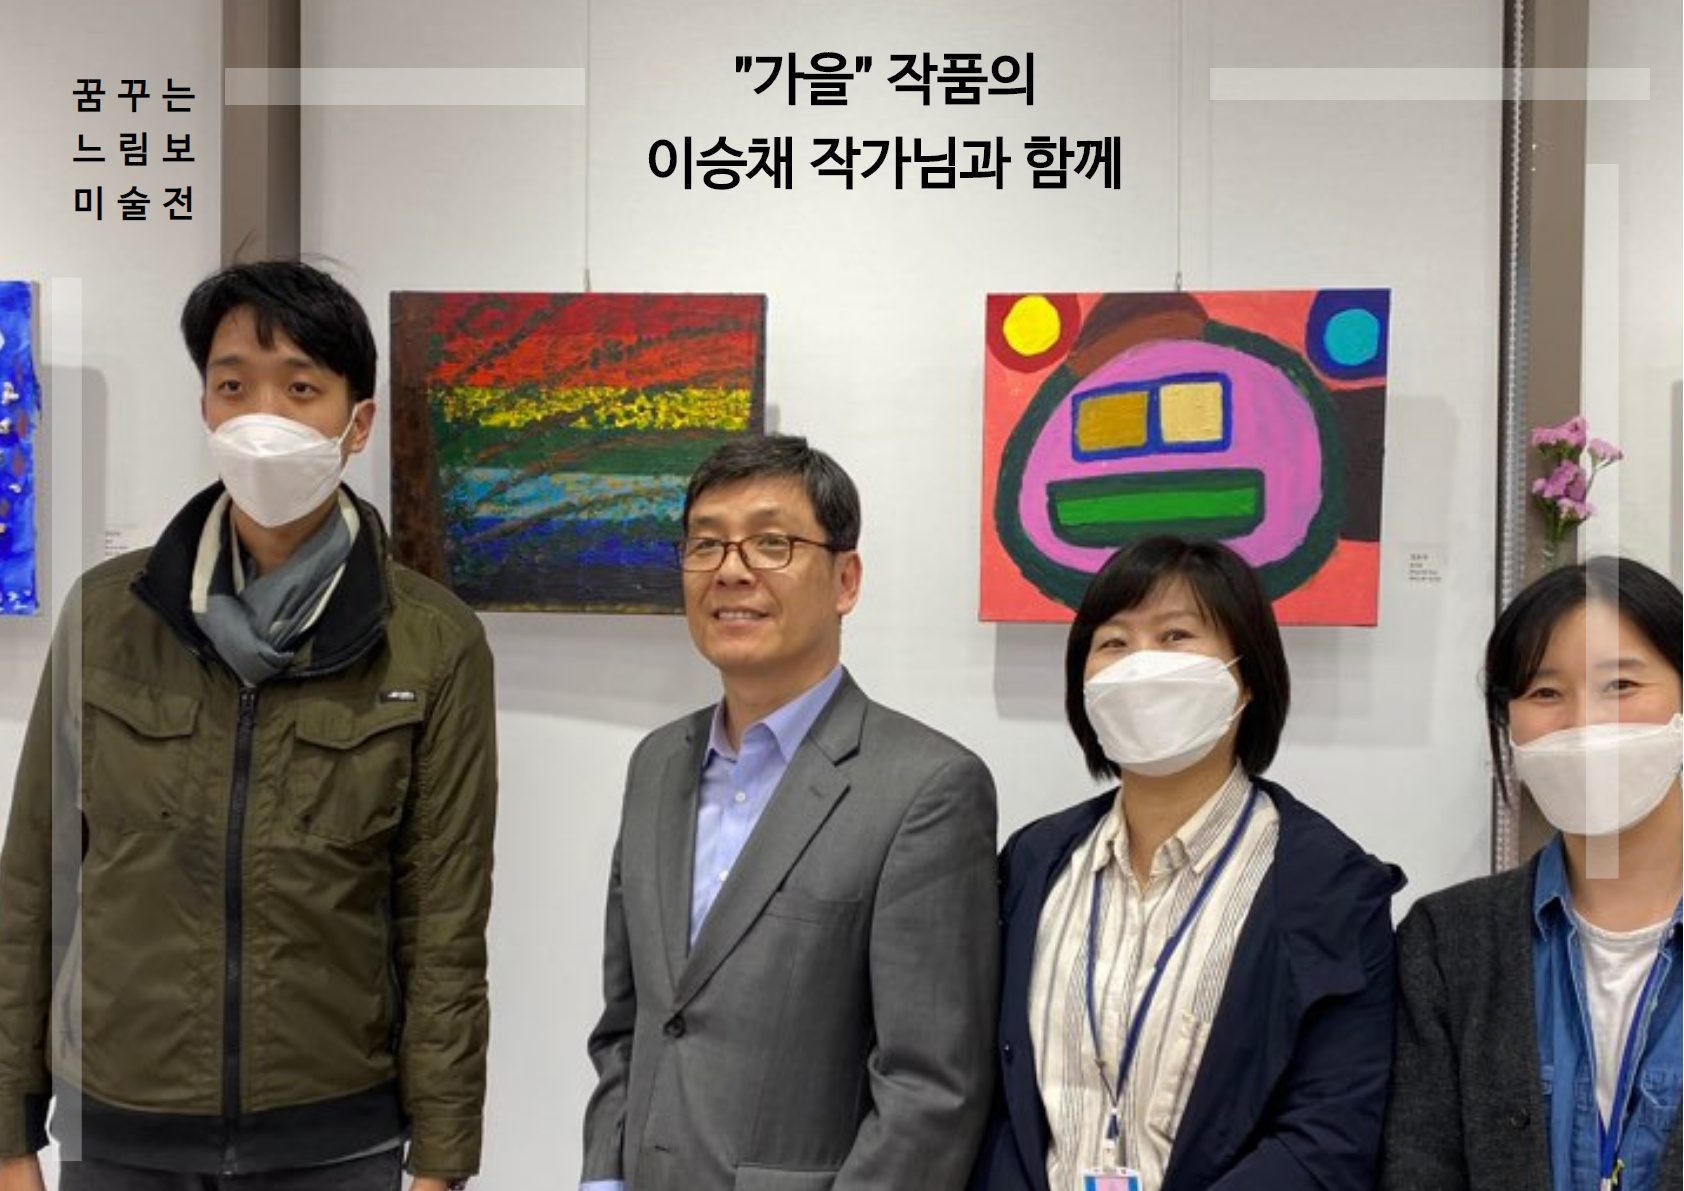 이승채 작가님의 가을 그림 앞에서 작가님, 박상호 관장님, 김선일 부장님, 이주희 팀장님 총 4명이 함께 찍은 사진 